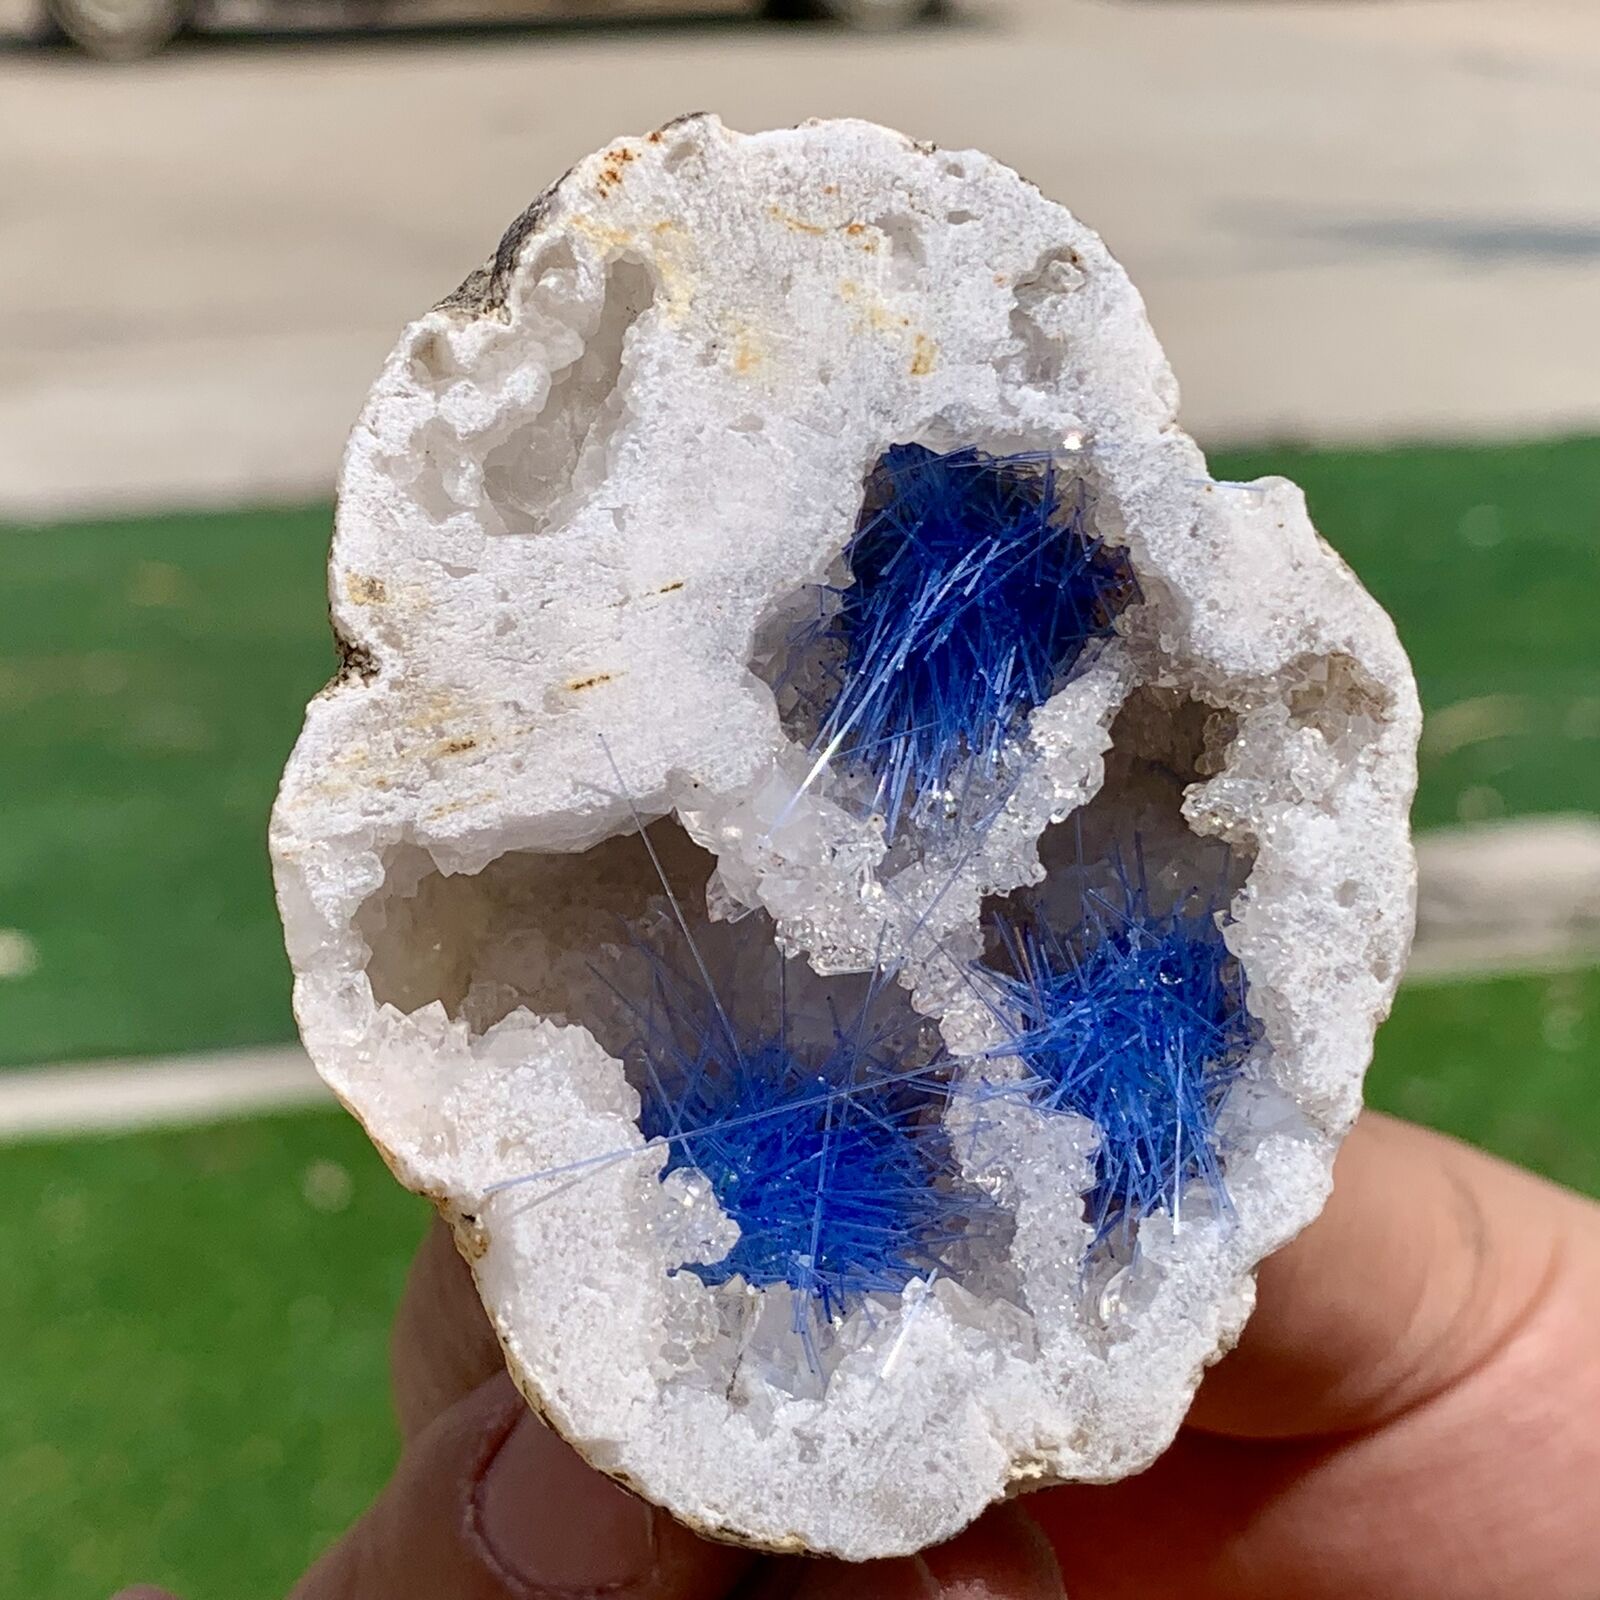 100G Rare Moroccan blue magnesite and quartz crystal coexisting specimen